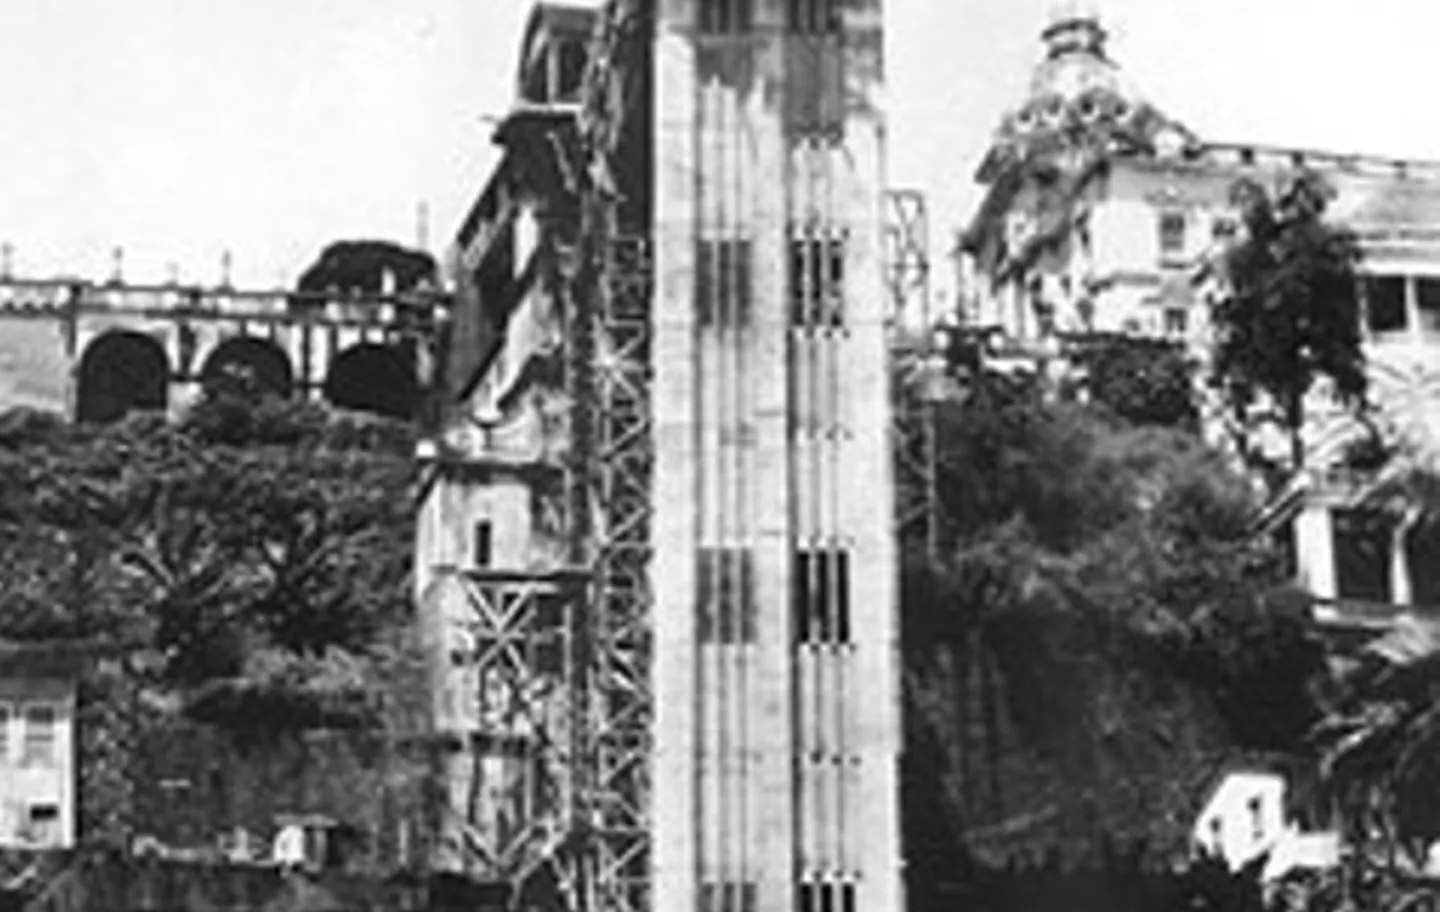 O Elevador Lacerda foi o primeiro elevador público do Brasil